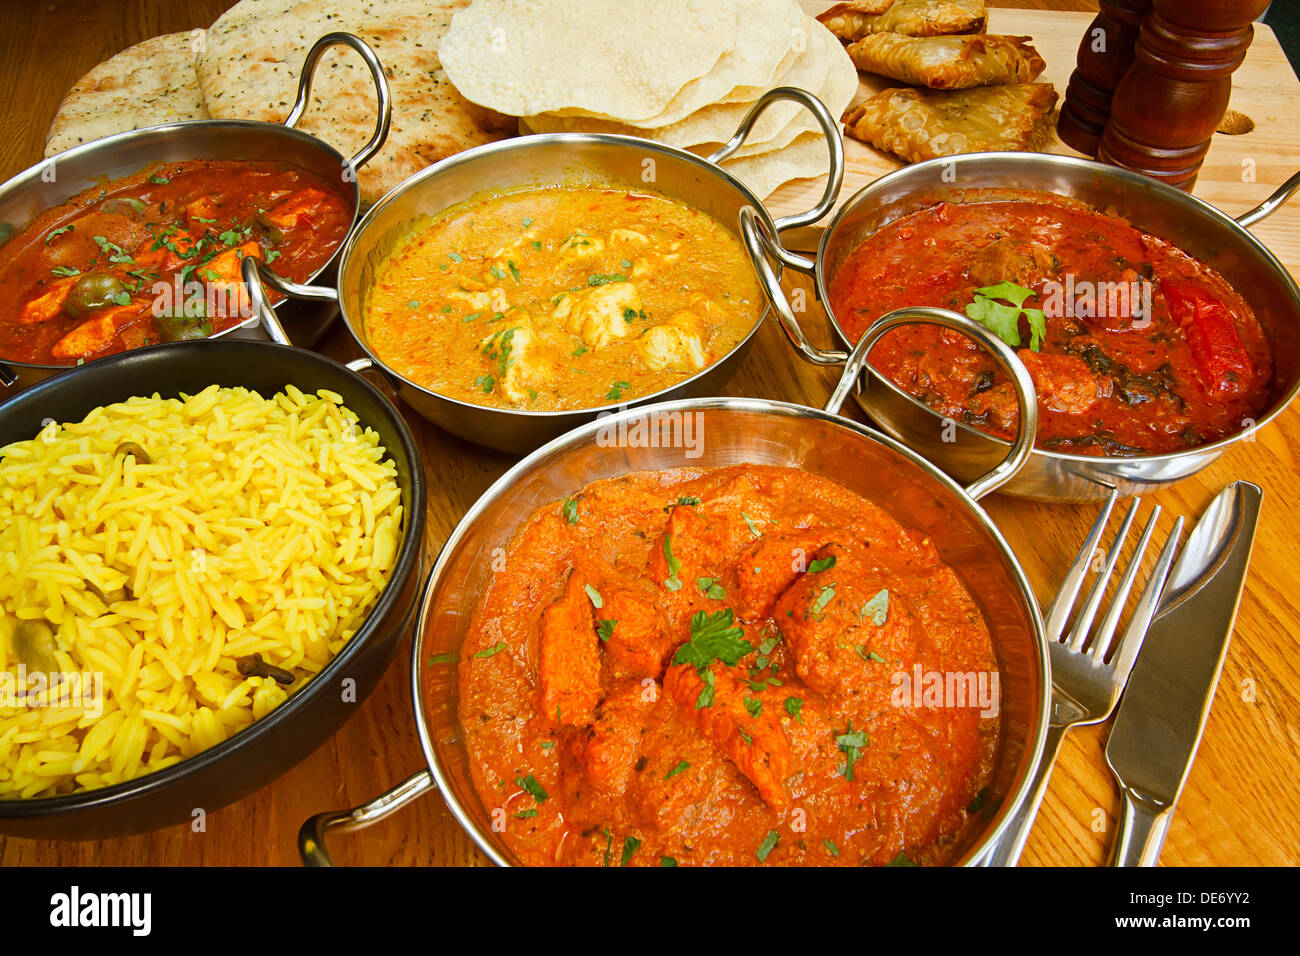 Ampia selezione di cucina indiana sul tavolo compreso il pollo Tikka, carni bovine rogan josh, pollo e jalfrezi Chicken Korma. Foto Stock